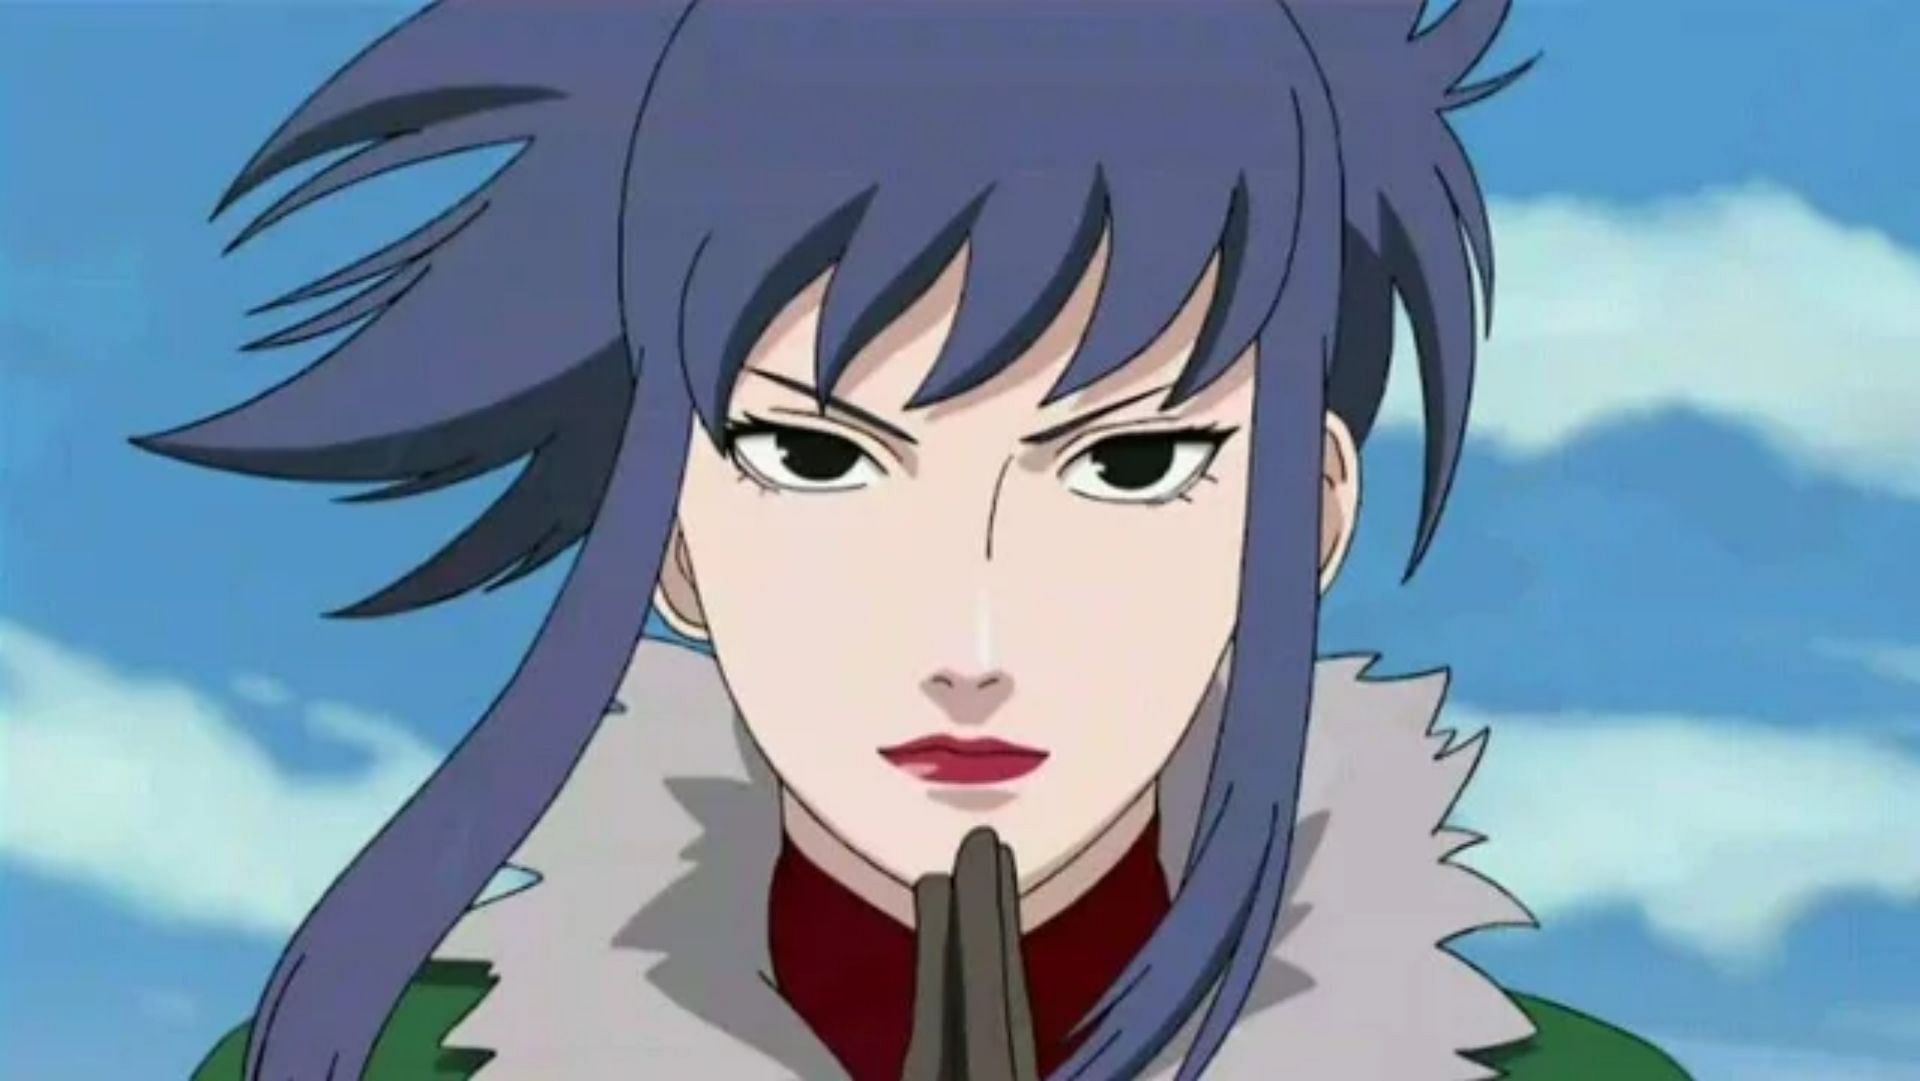 Guren, as seen in Naruto (Image via Studio Pierrot)